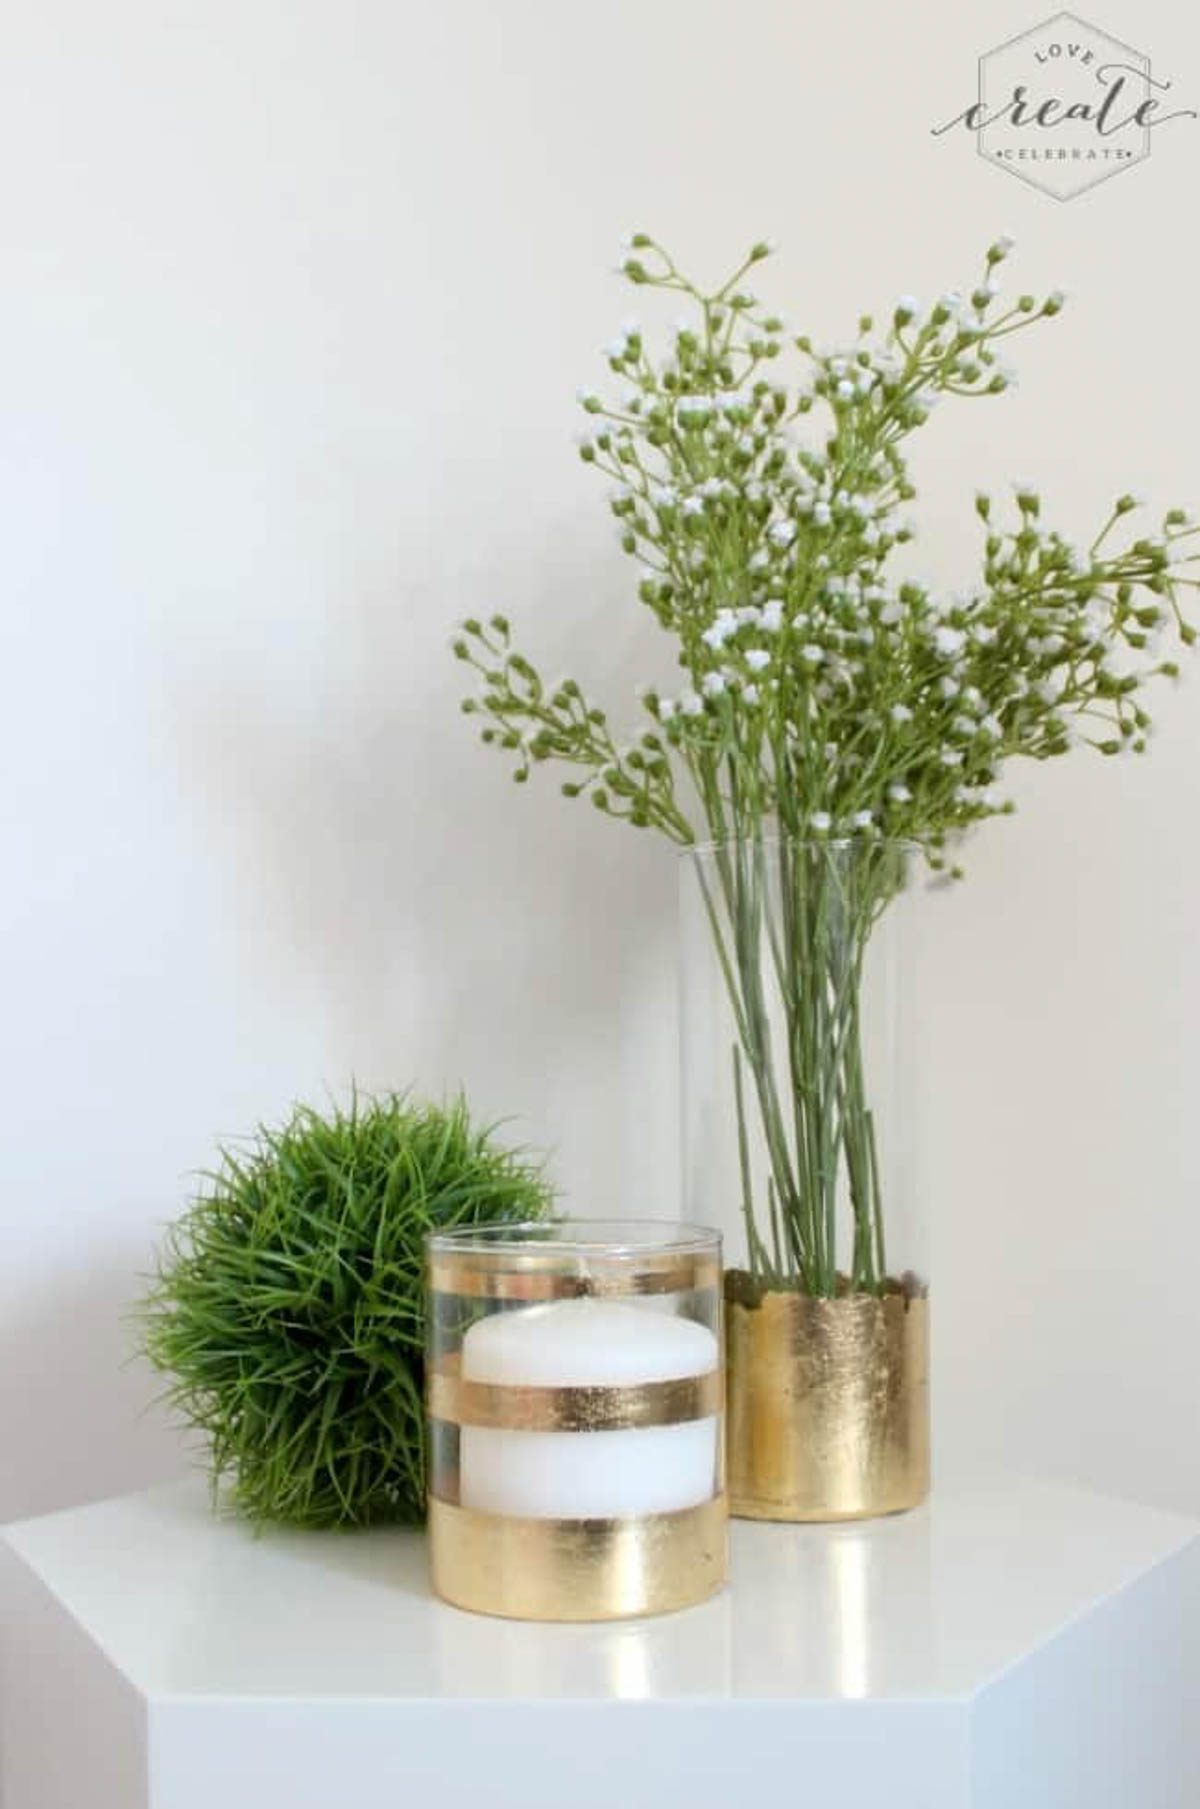 Finished gold leaf vase and candle holder designed with gold leaf